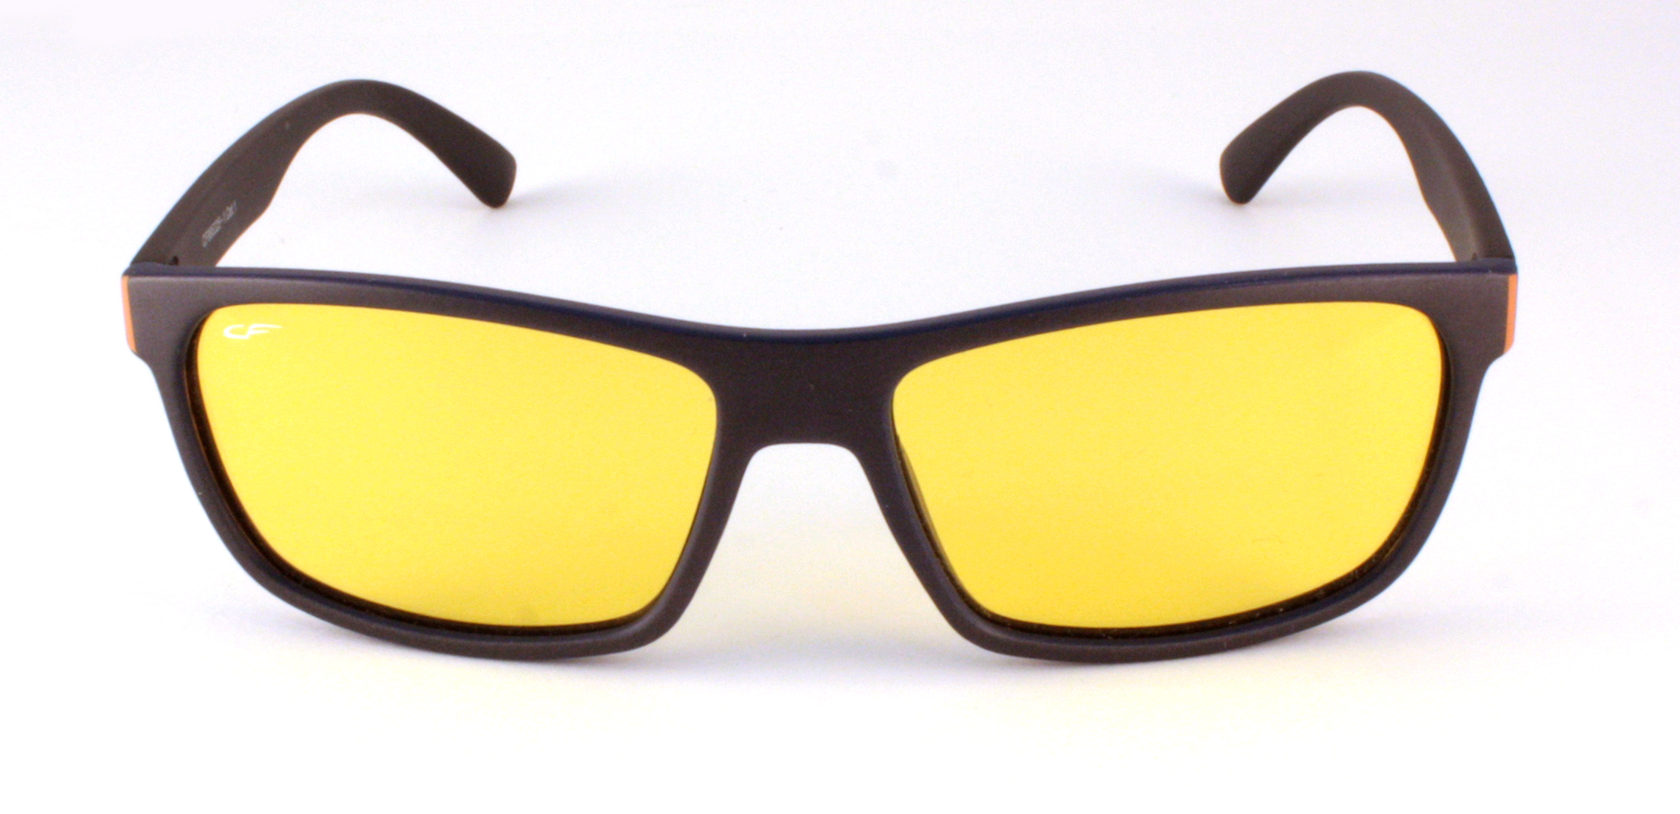 Солнцезащитные очки желтые мужские. Очки Cafa France желтые. Очки Cafa France d00355. Очки Polaroid желтые. Cafa France s11940.